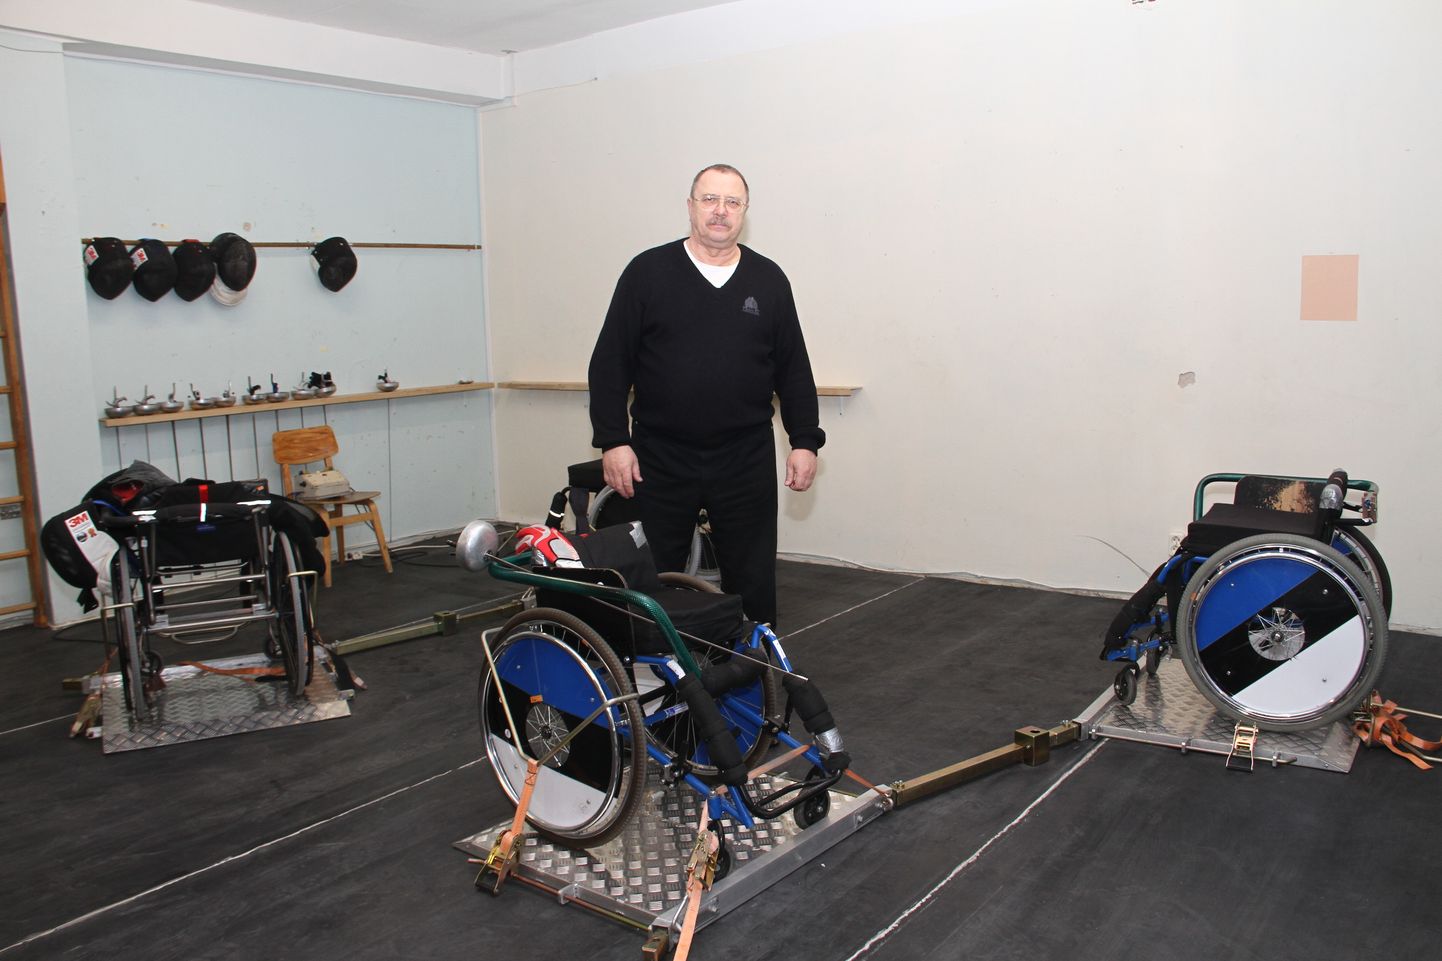 Александр Ларюшин показывает зал, в котором по вечерам тренируются фехтовальщики в инвалидных колясках.